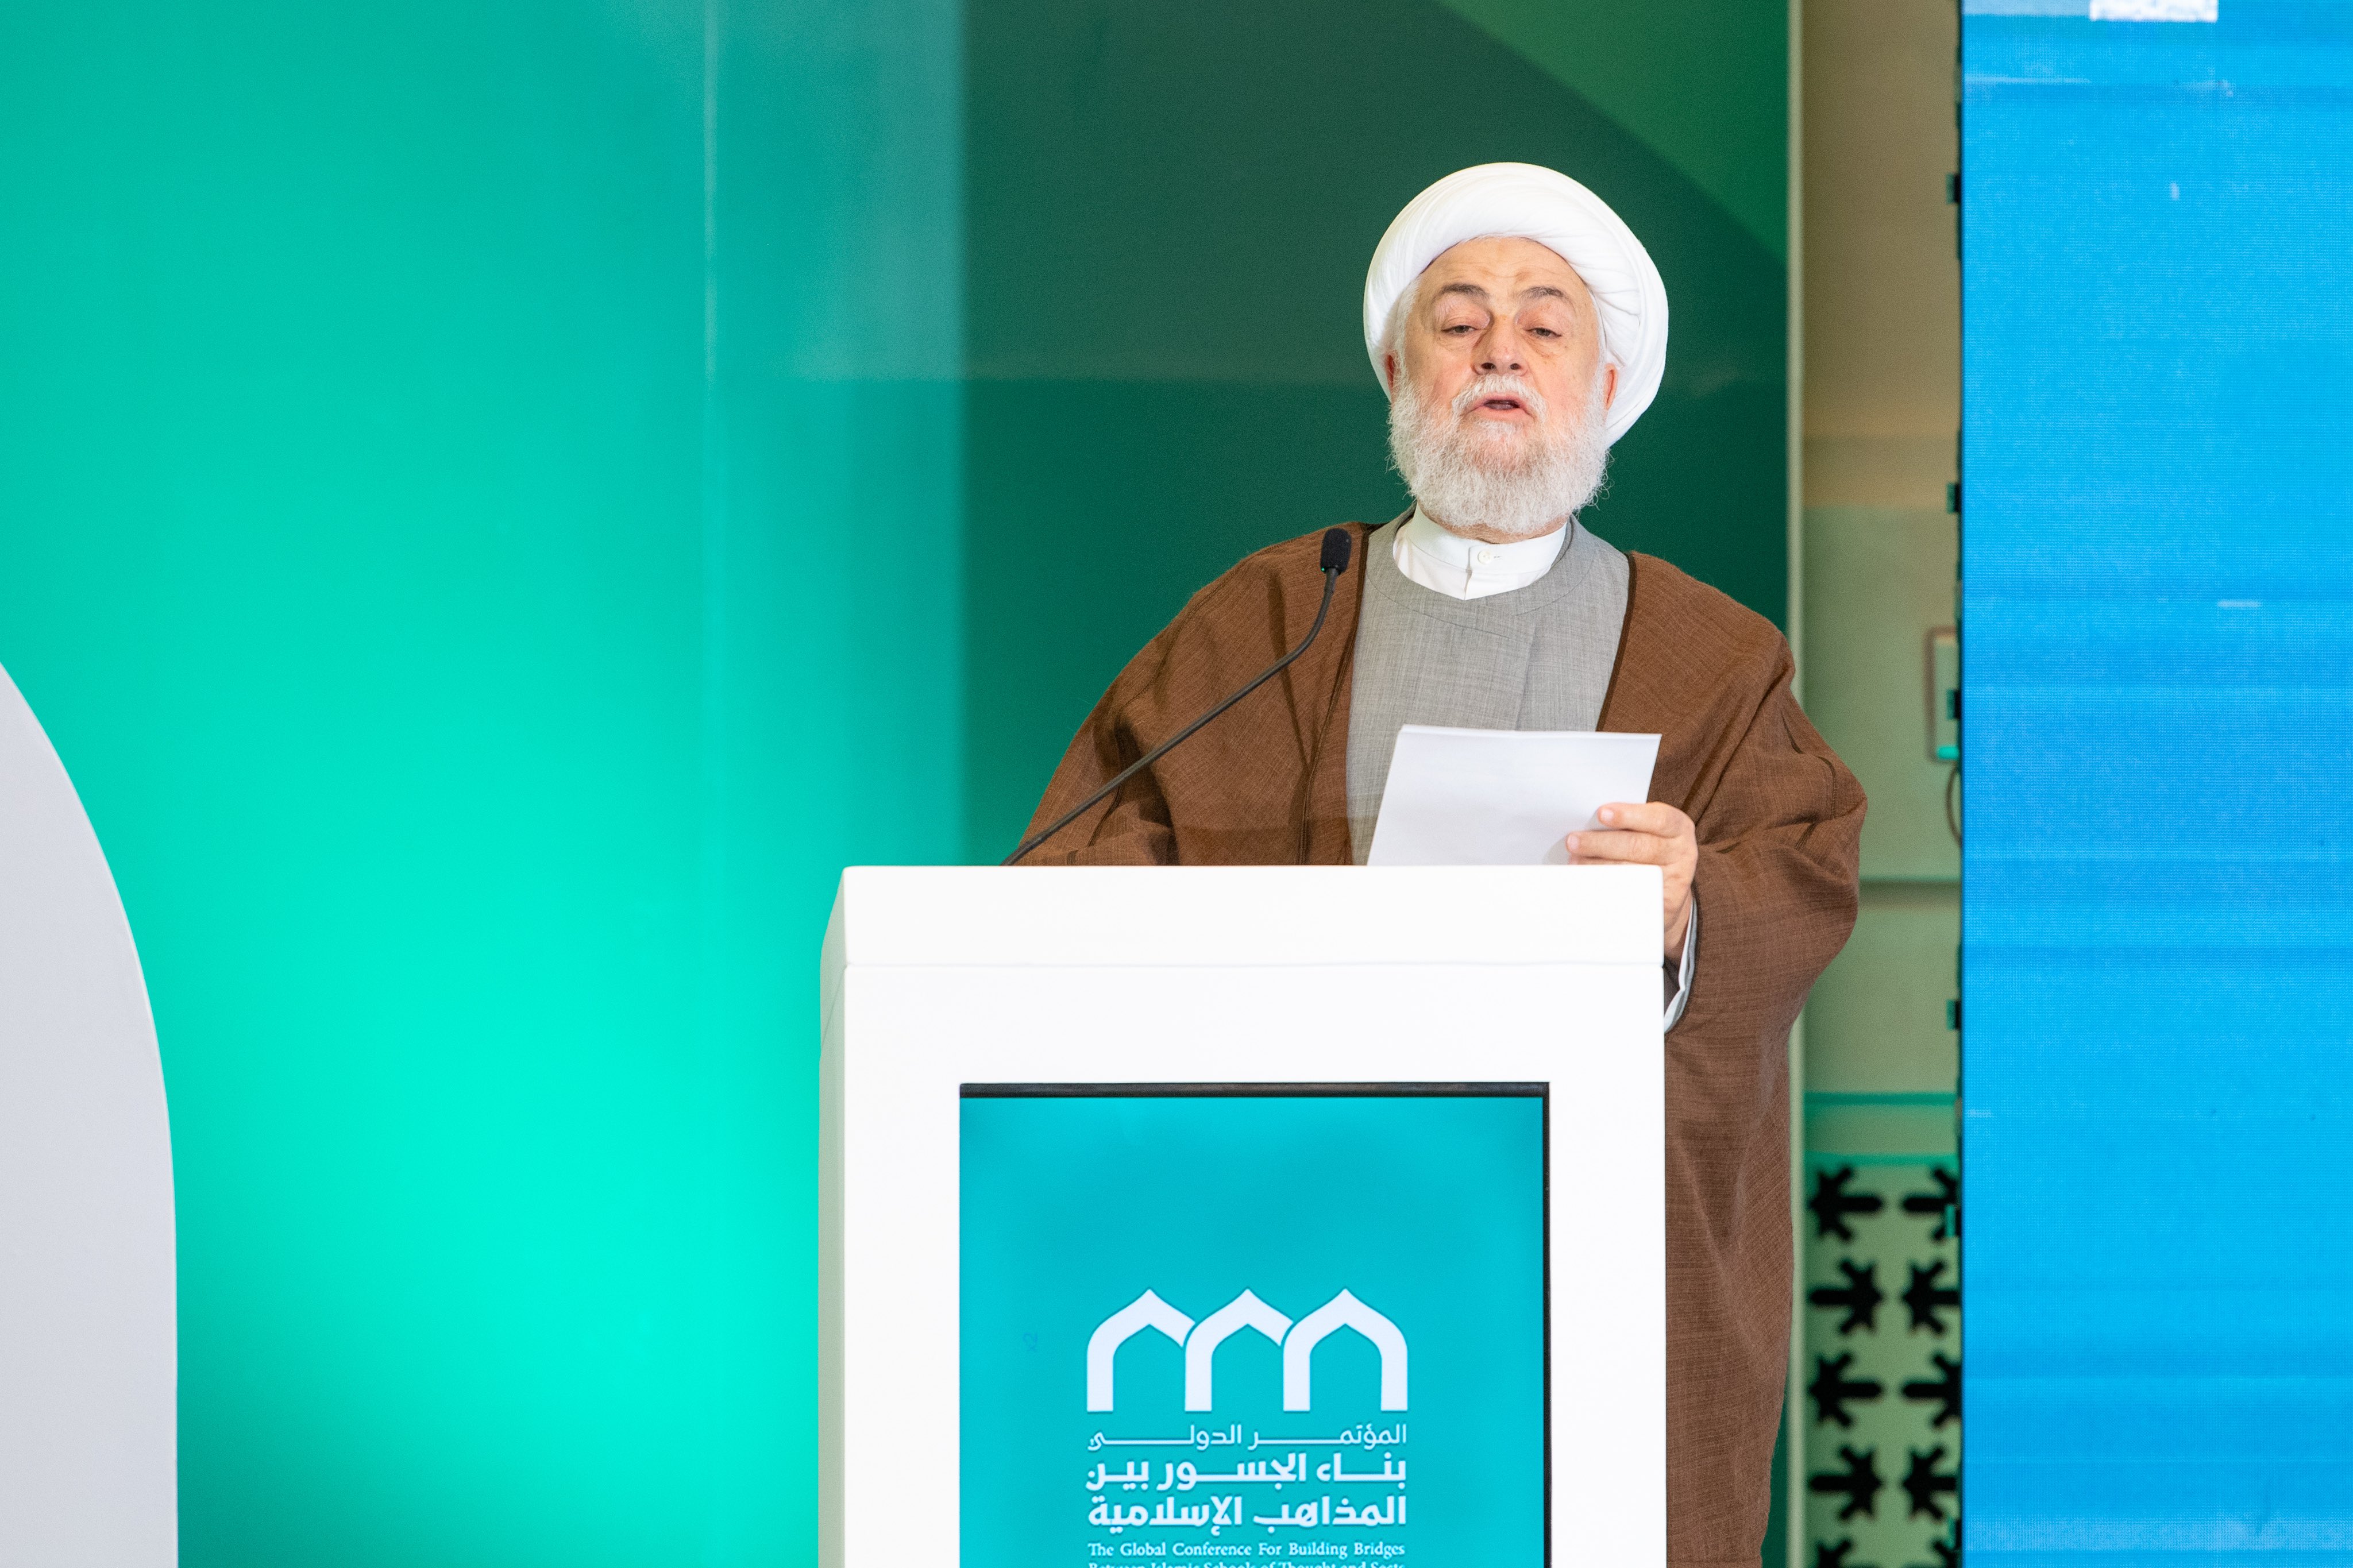 مفتی اعظم صیدا، جمہوریہ لبنان  فضیلۃ الشیخ محمد عسیران، اسلامی مذاہب کے درمیان پلوں کی تعمیر کانفرنس کے اختتامی اجلاس سے خطاب کرتے ہوئے: